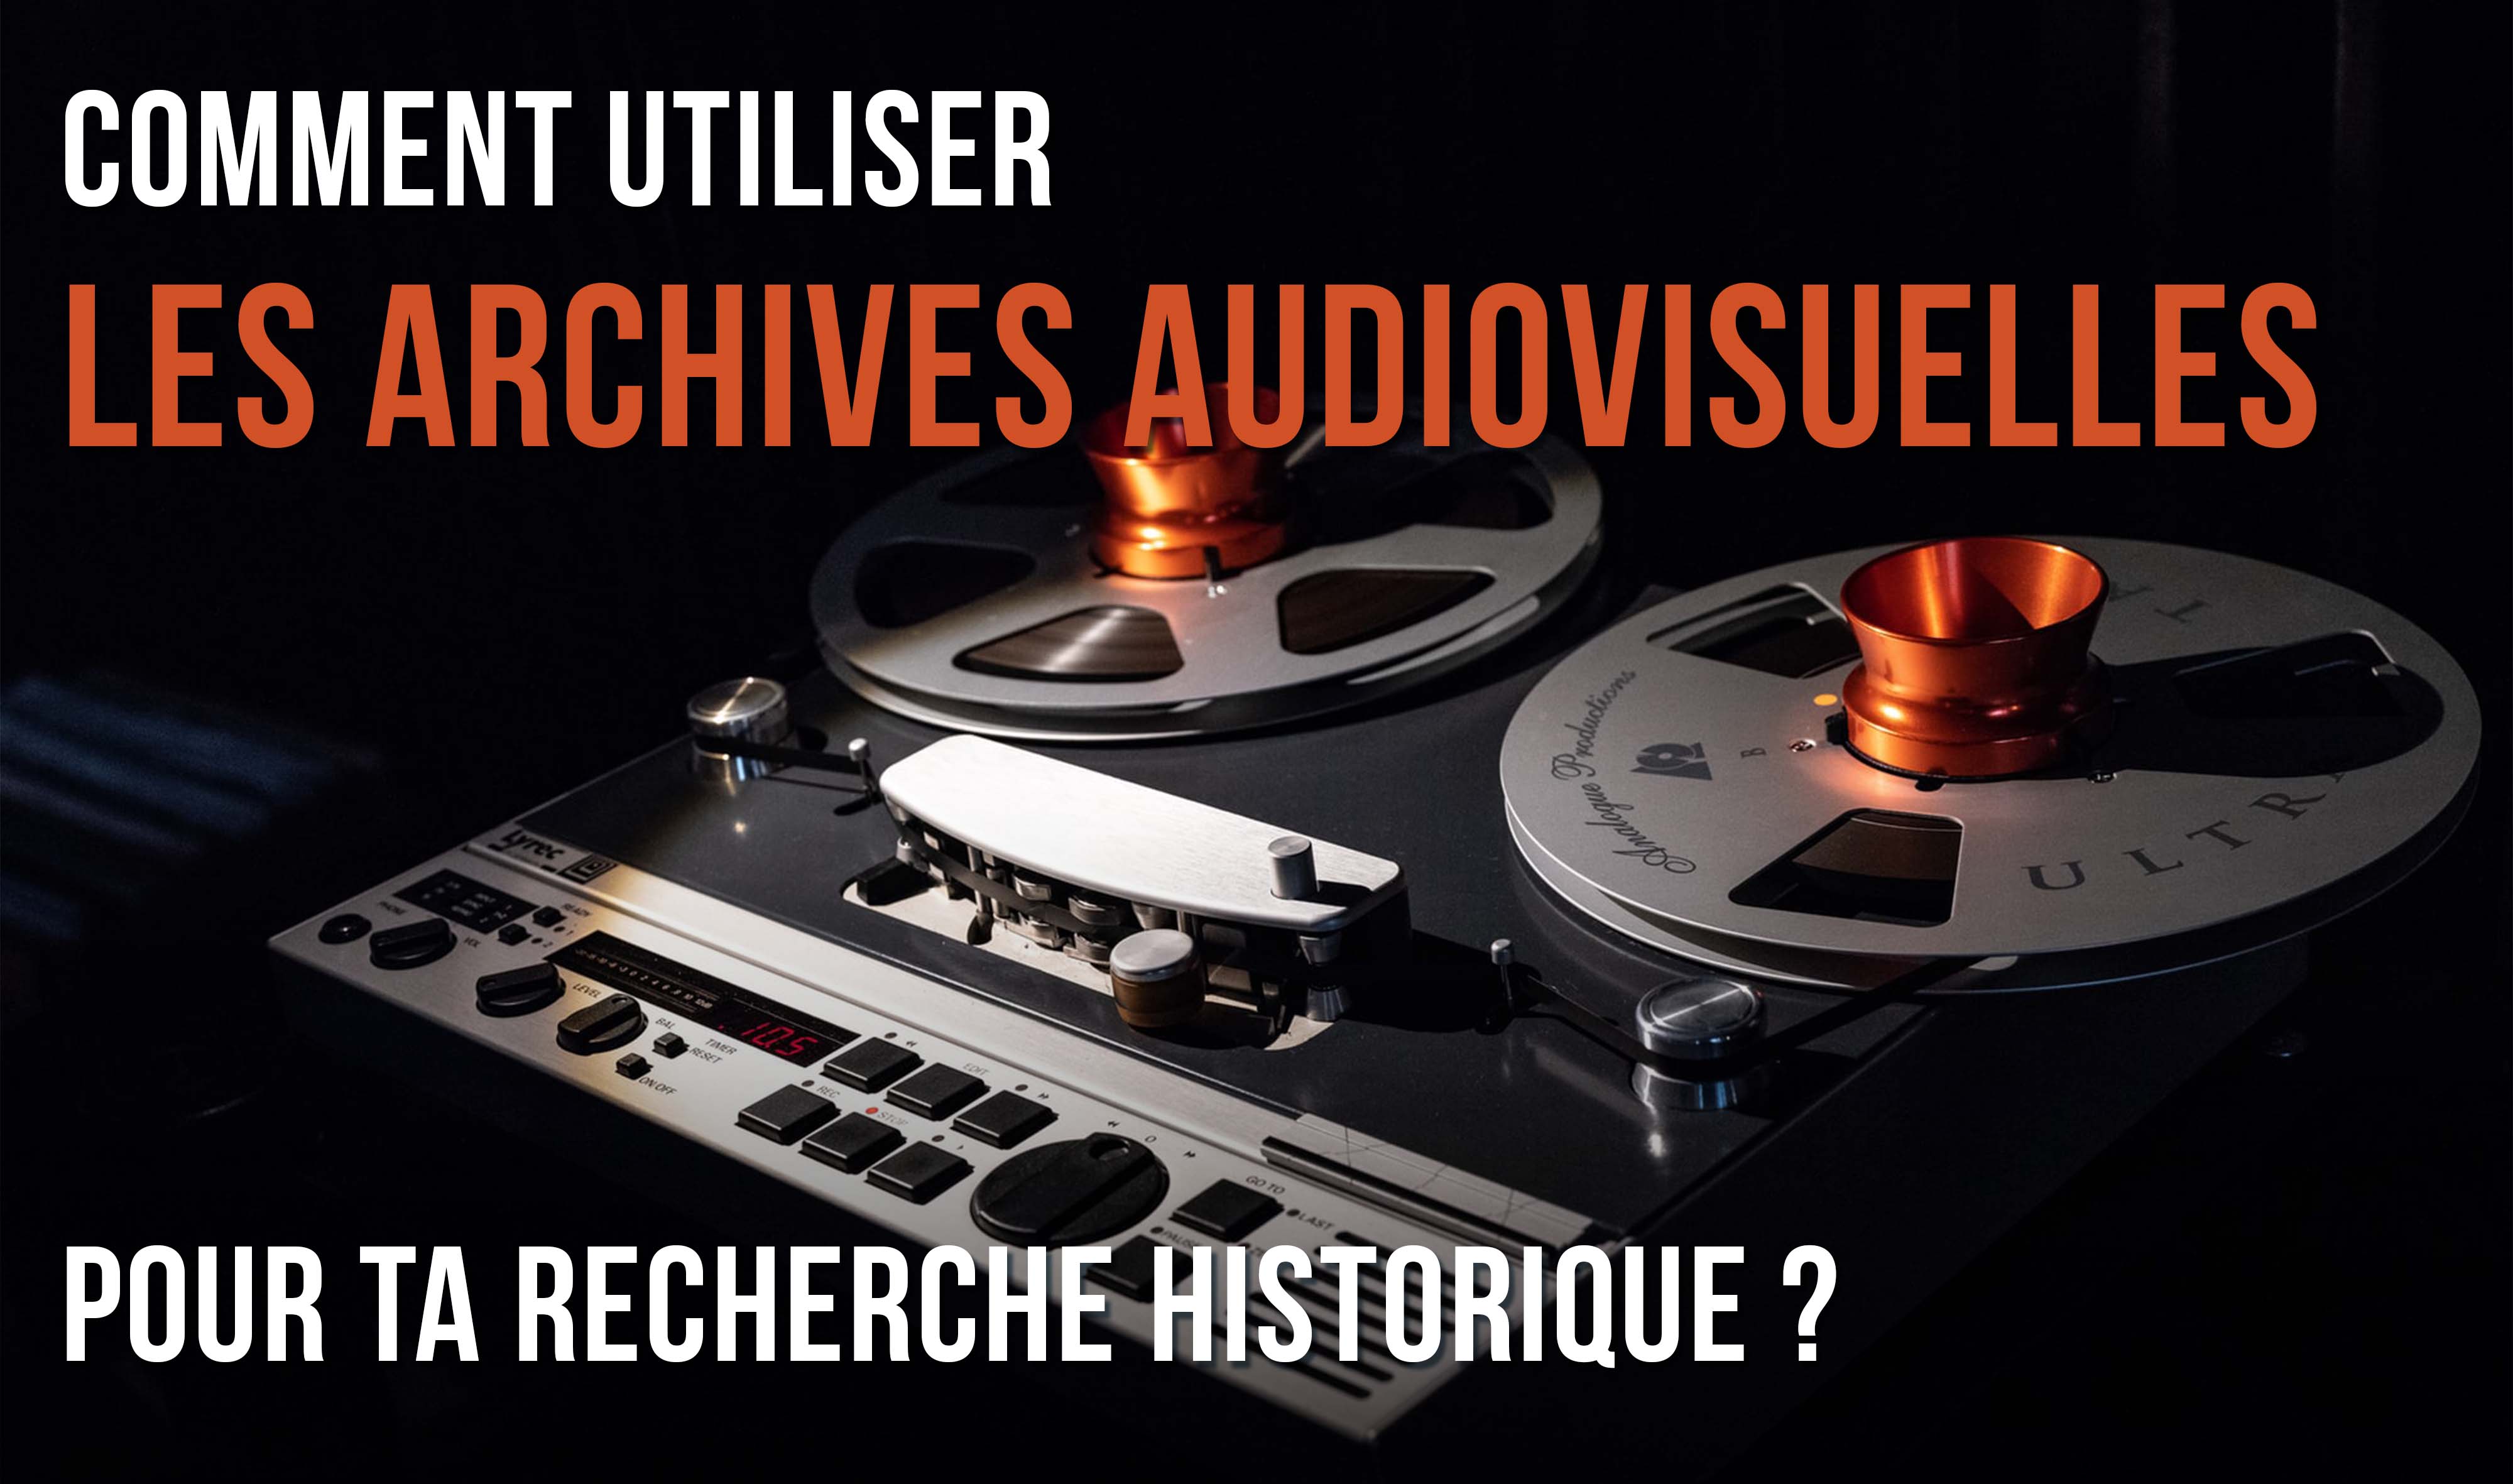 Comment utiliser les archives audiovisuelles?